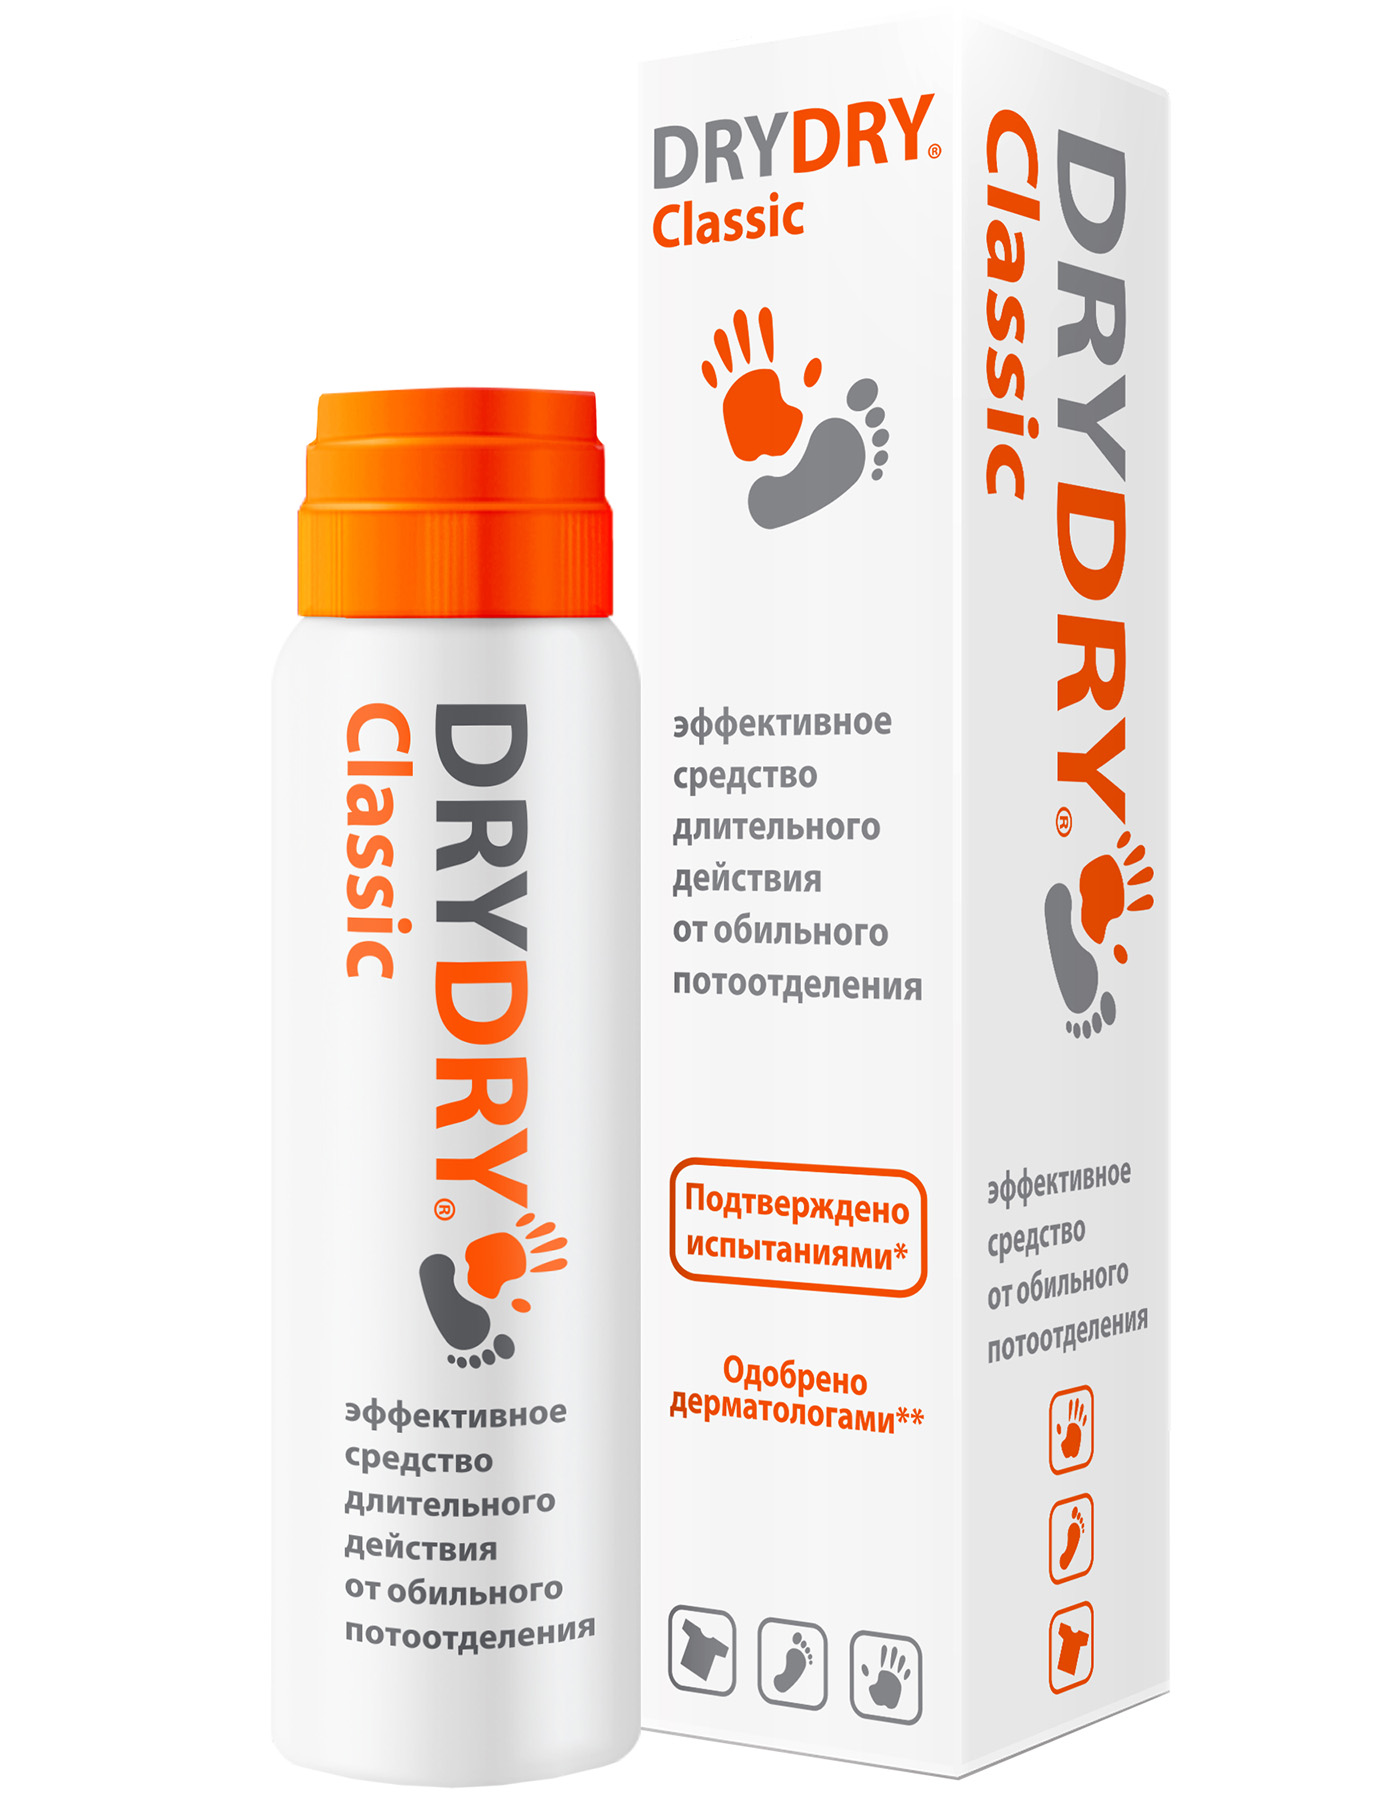 Dry Dry Средство от обильного потоотделения длительного действия 35 мл (Dry Dry, Classic) dry dry средство от обильного потоотделения 50 мл dry dry light